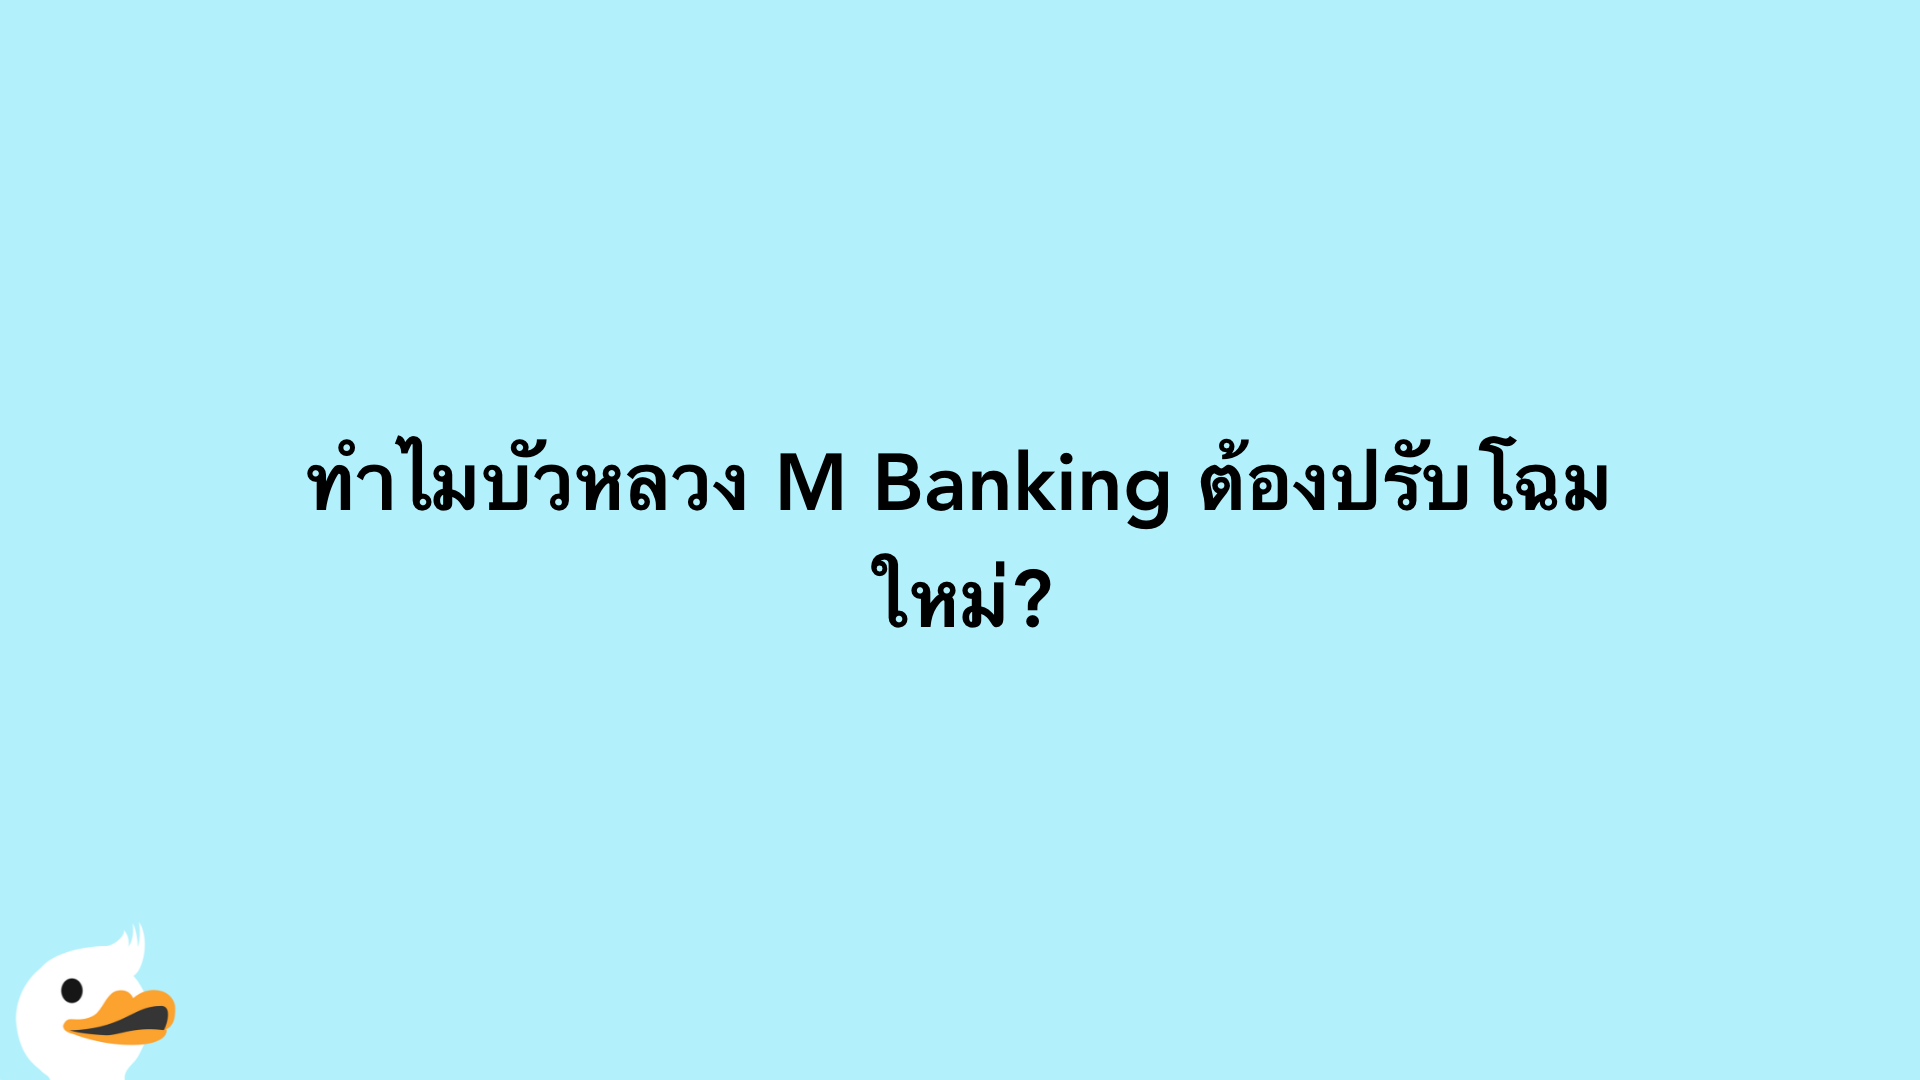 ทำไมบัวหลวง M Banking ต้องปรับโฉมใหม่?